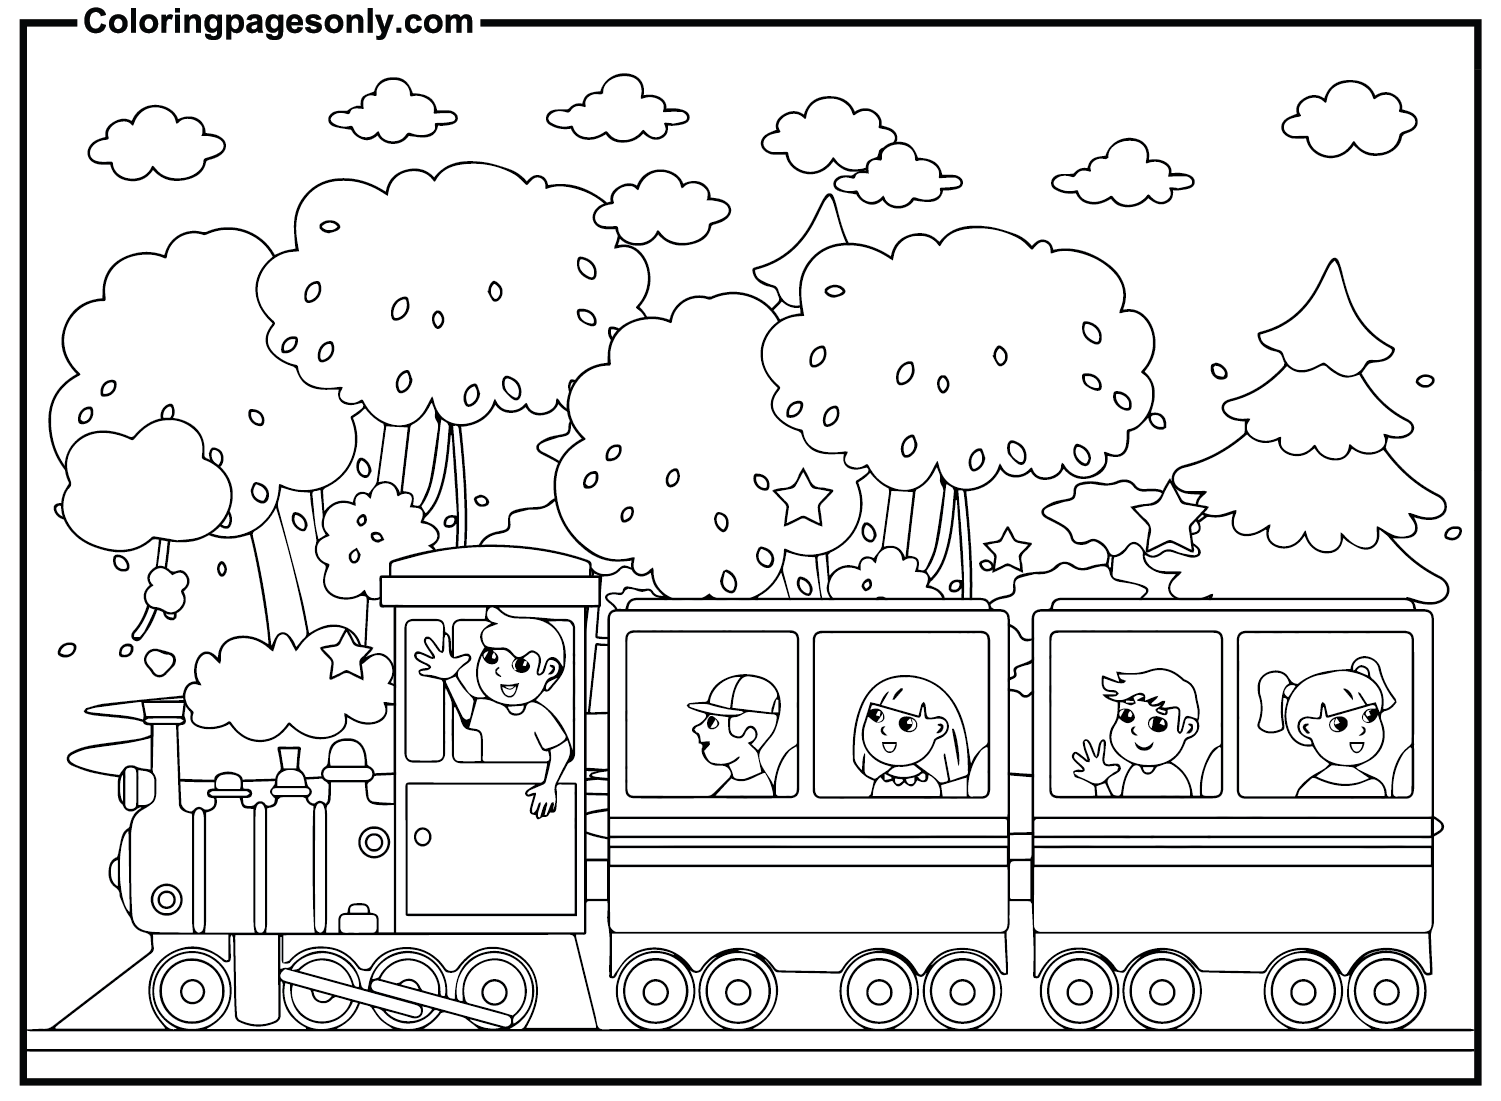 Enfants dans le train depuis le train